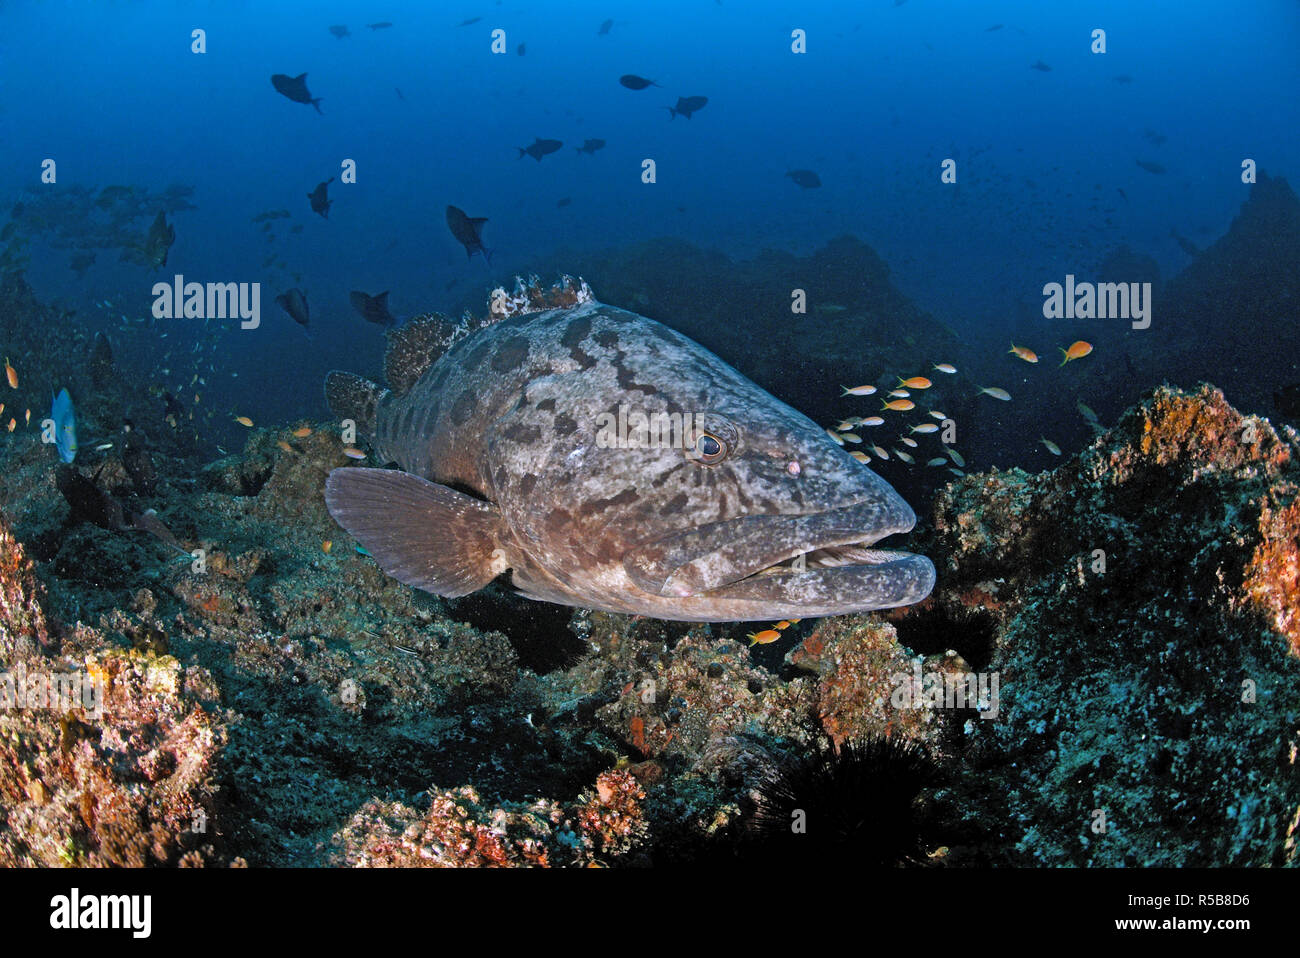 Potato cod, Potato grouper or Giant Grouper (Epinephelus tukula), at a coral reef, Tofo, Mosambique Stock Photo